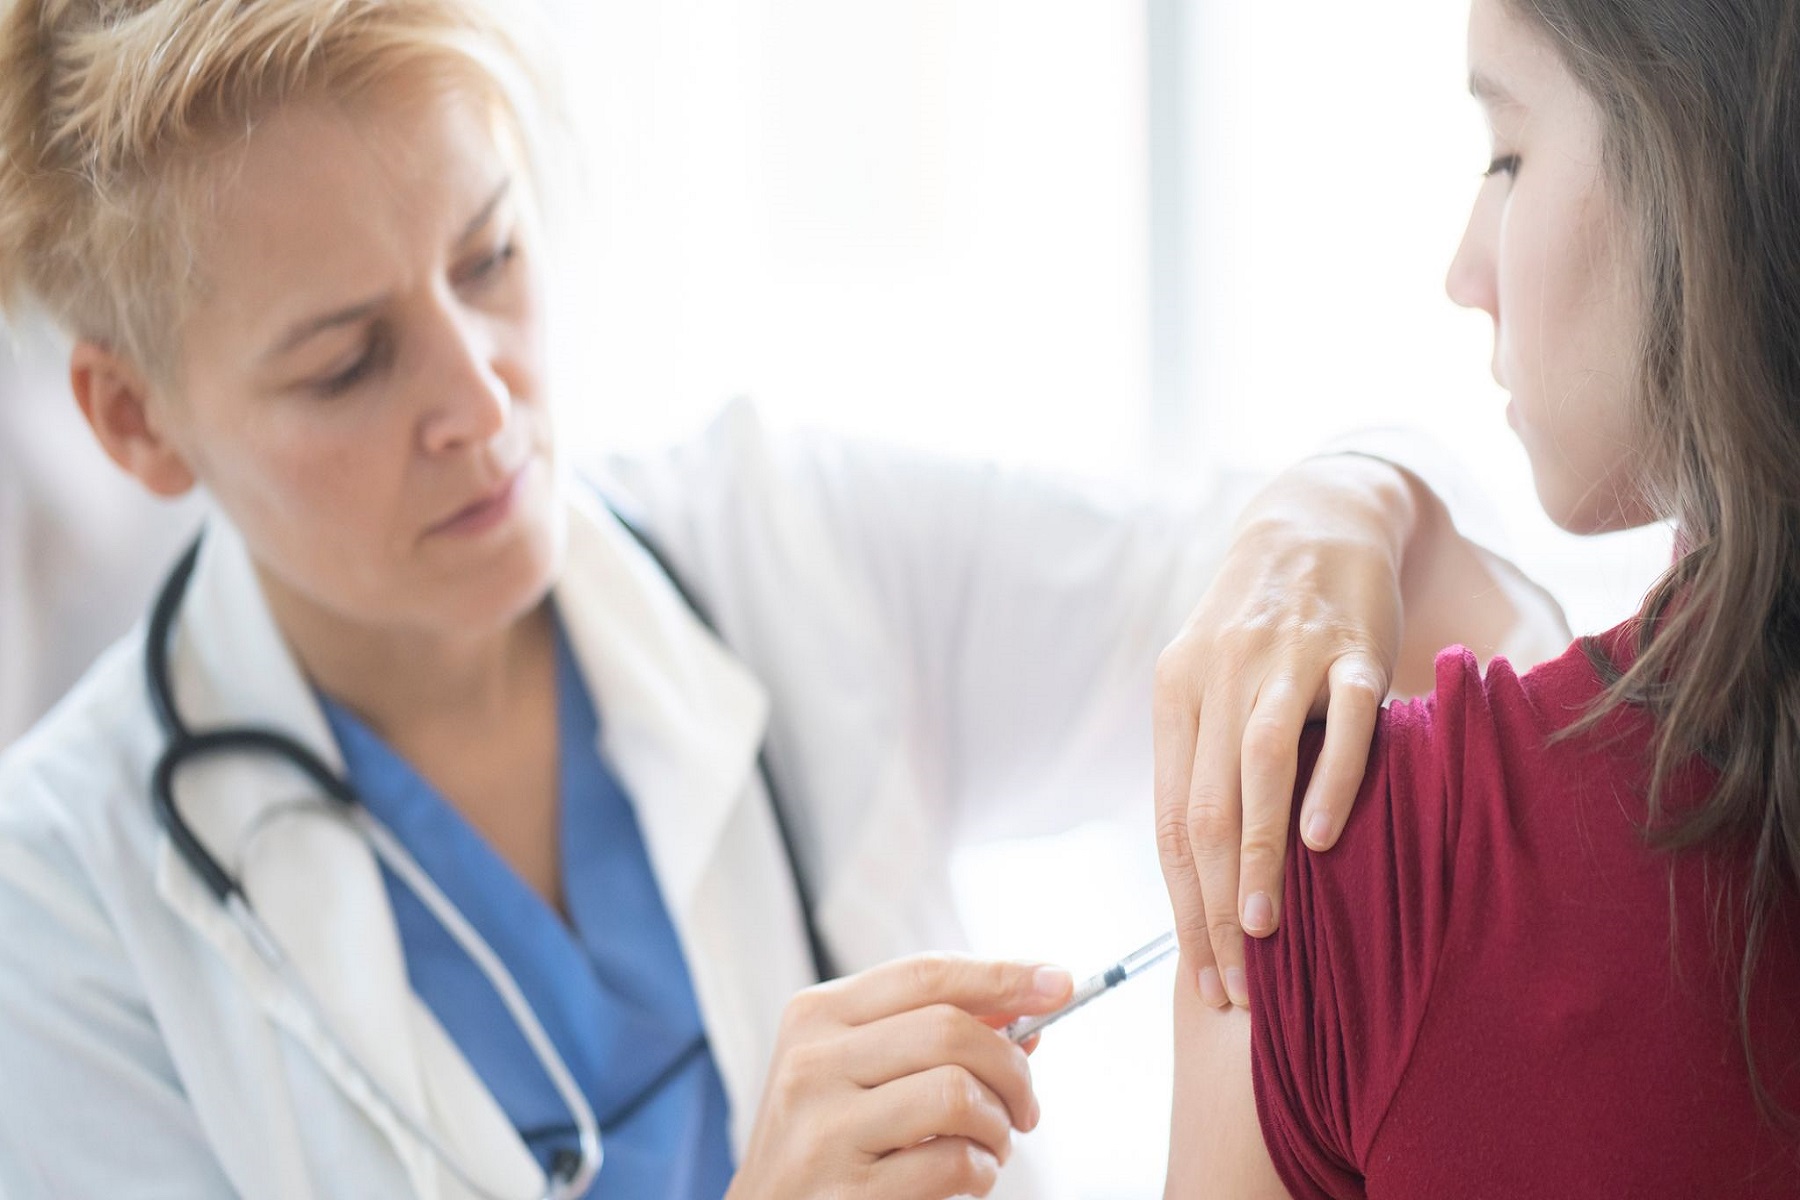 Εμβολιασμός HPV Ηνωμένο Βασίλειο: Μείωσε τα ποσοστά καρκίνου του τραχήλου της μήτρας, σύμφωνα με μελέτη